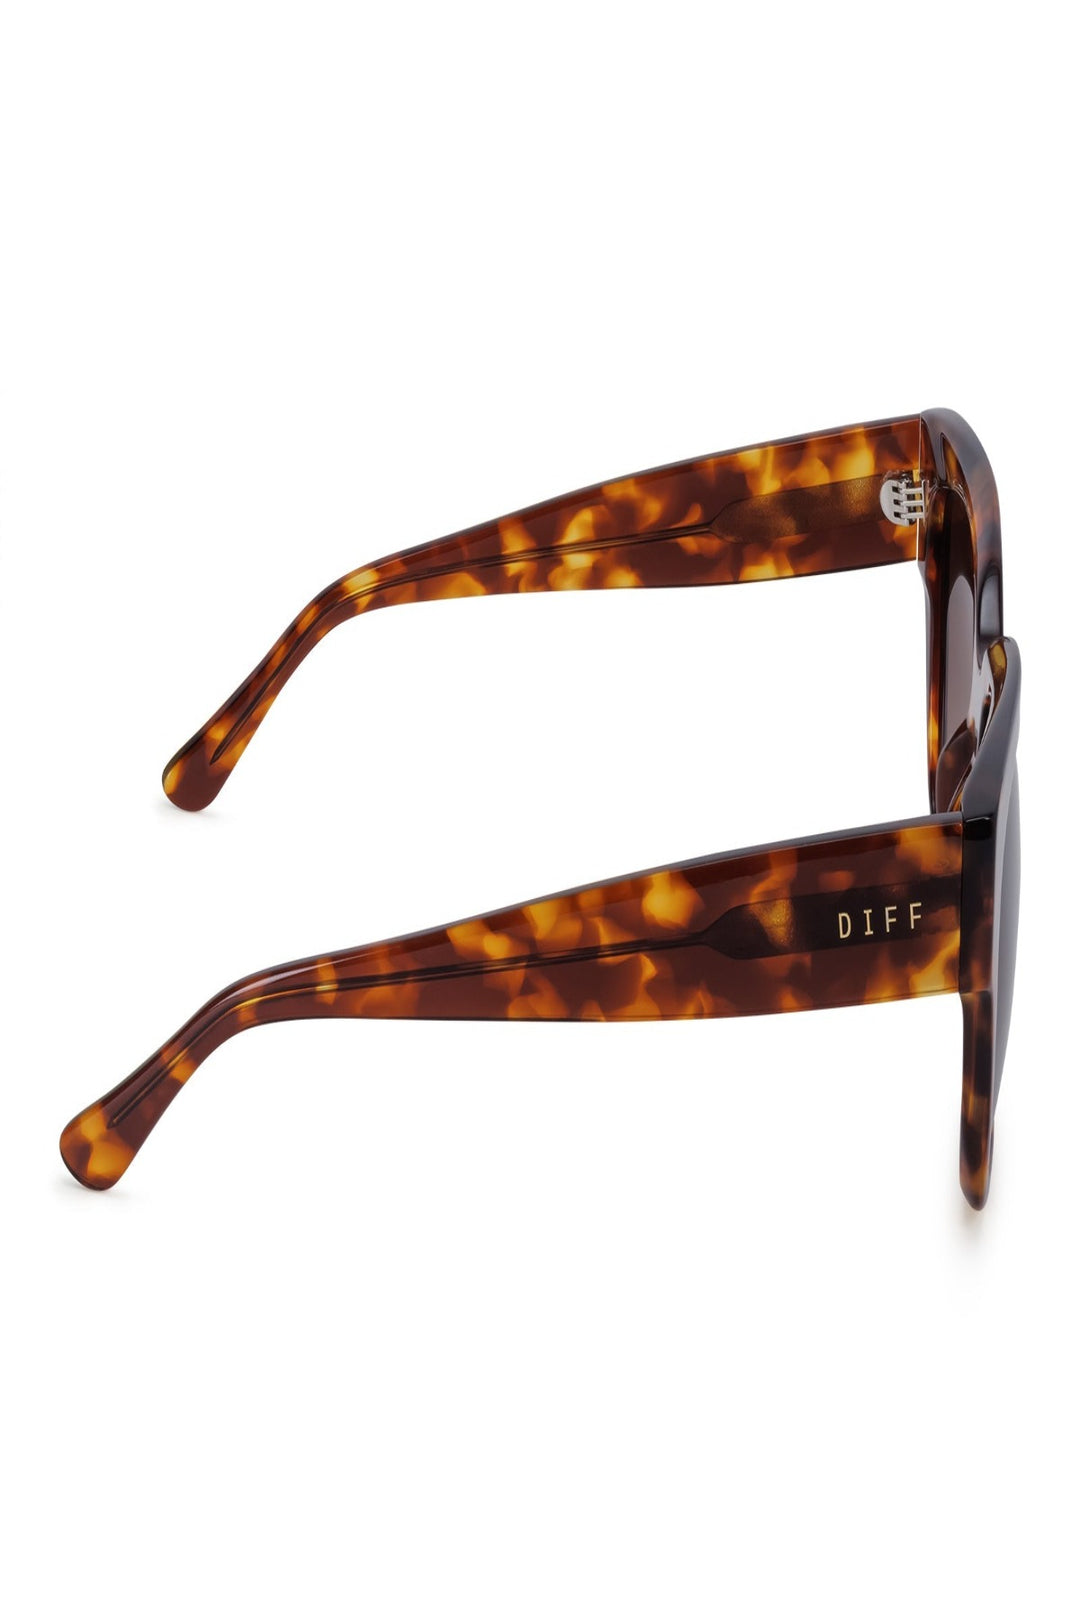 Diff Eyewear Bella II - Amber Tortoise + Brown Gradient Sunglasses